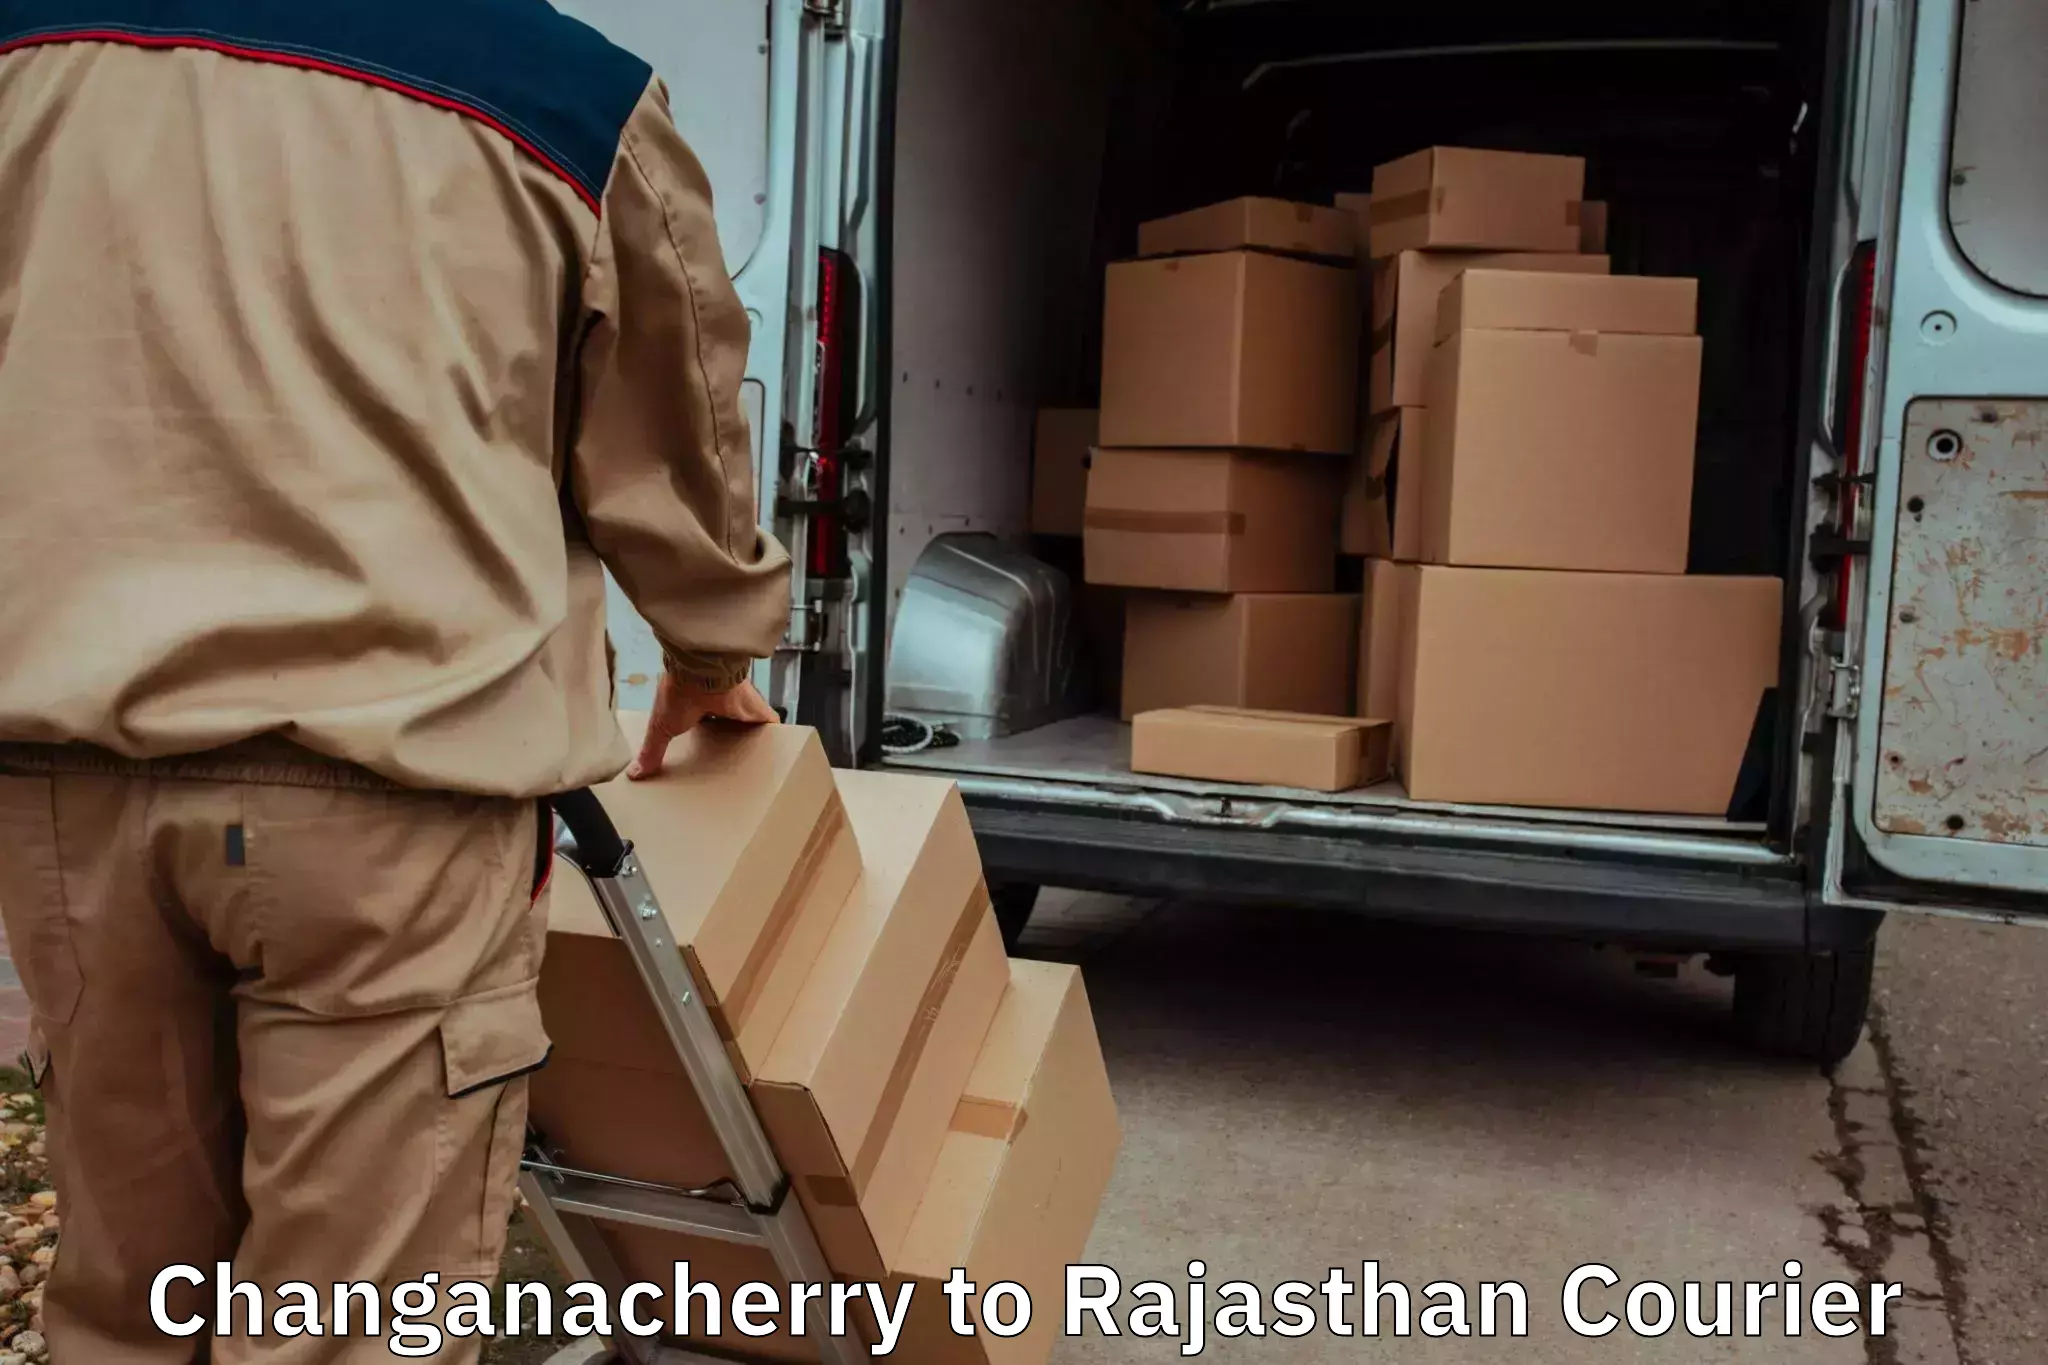 Household moving experts Changanacherry to Itawa